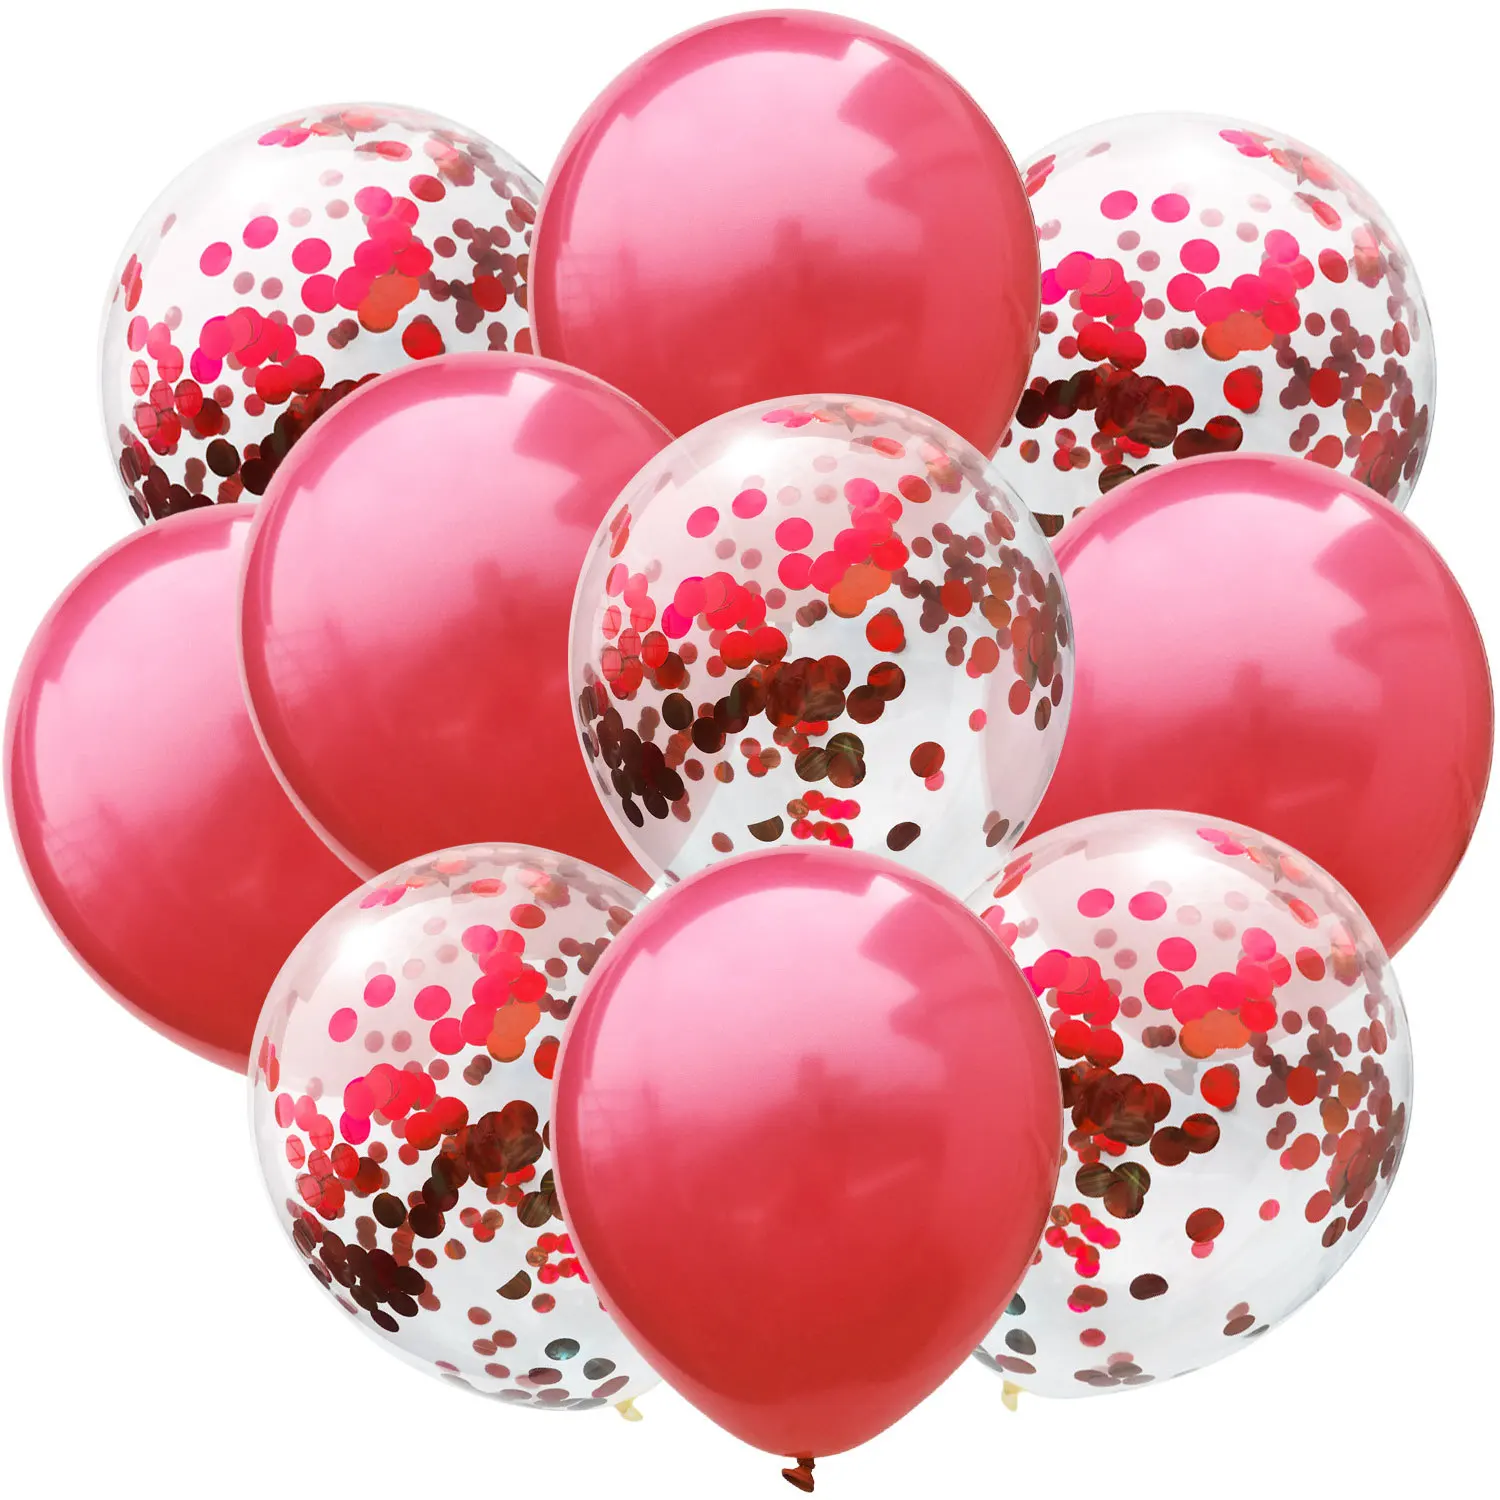 10 шт./компл. 12 дюймов Смешанные конфетти воздушные шары с днем День рождения украшения для детей и взрослых воздушный шар свадьбы баллон Декор/воздушные шары - Цвет: A24